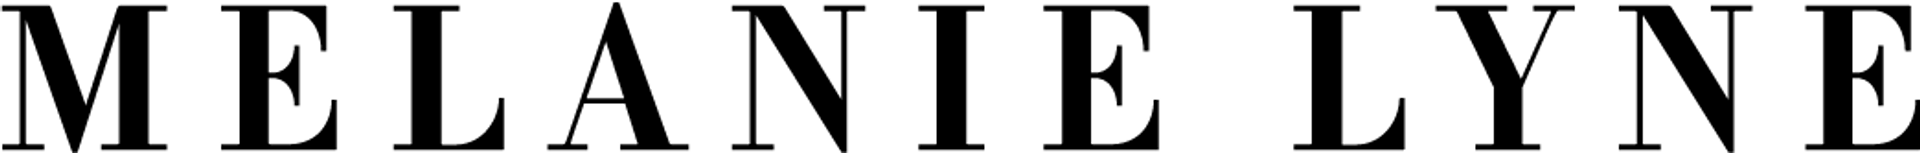 MELANIE LYNE logo de circulaire